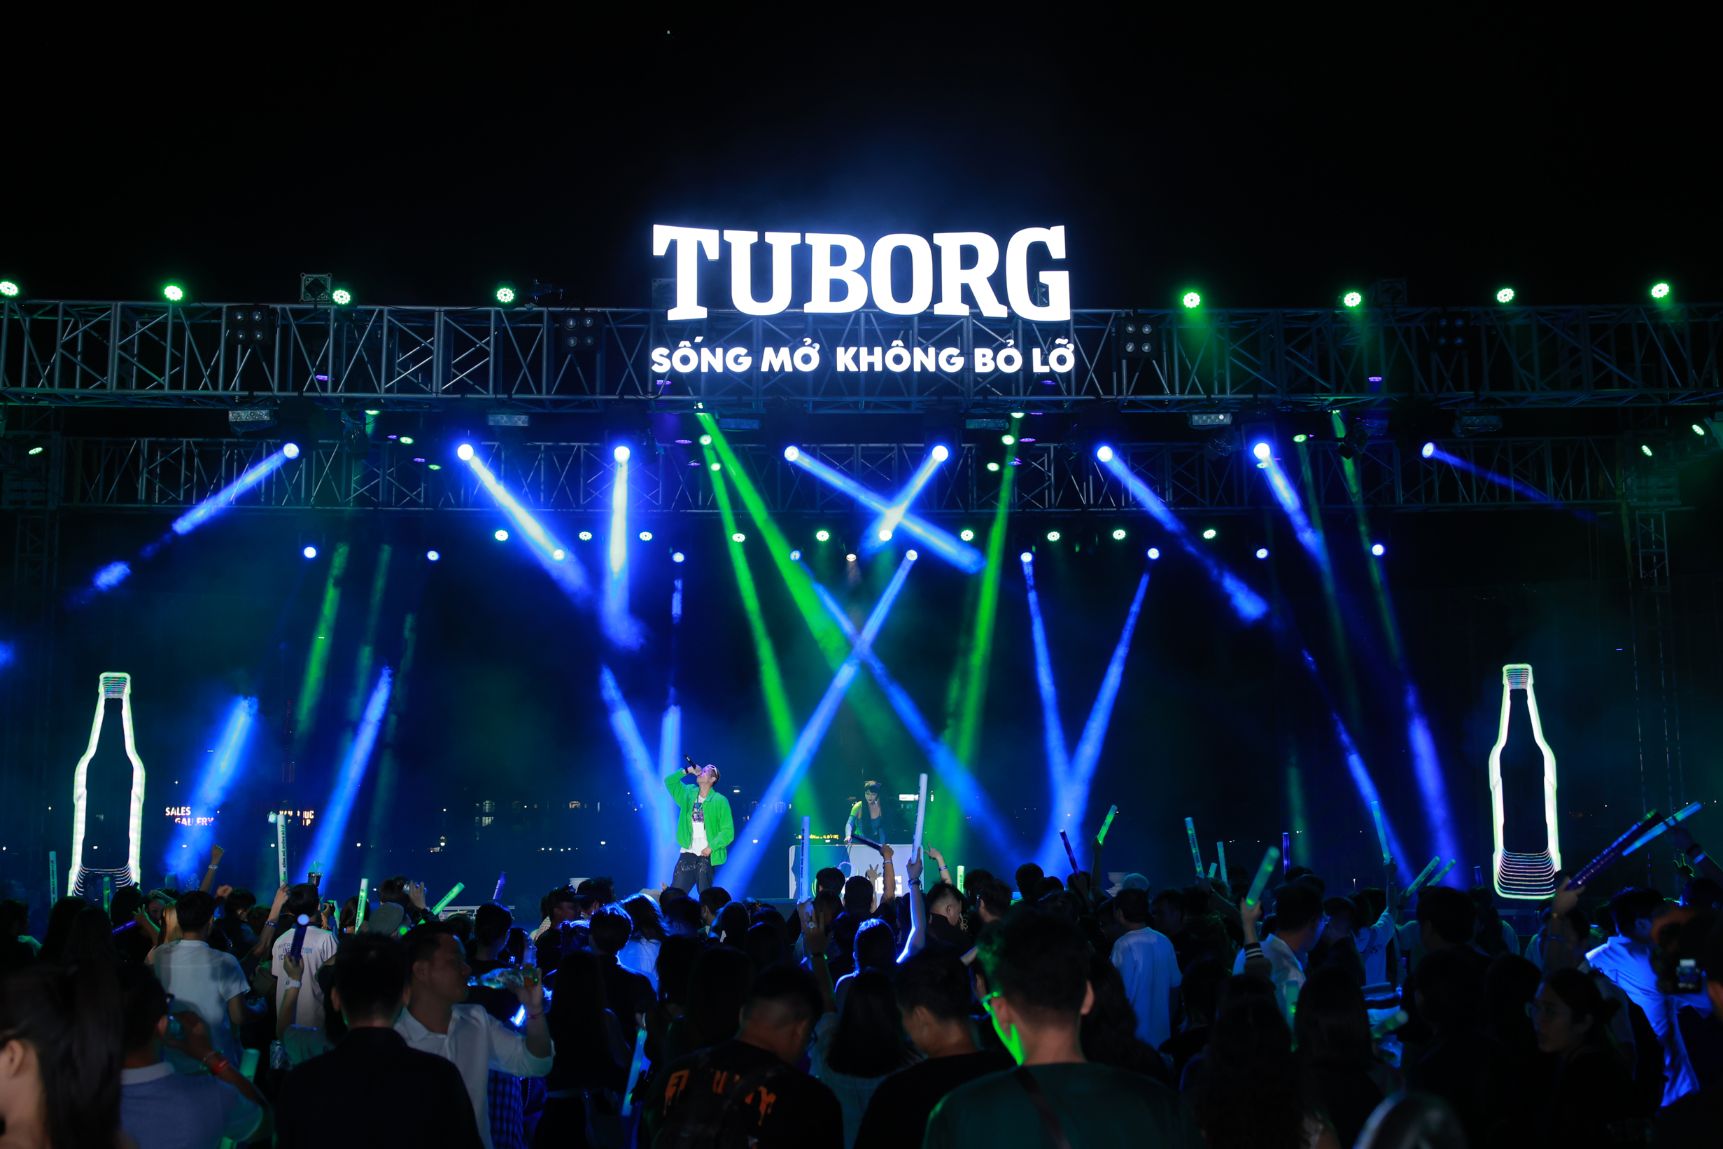 Ra mắt cùng thông điệp Sống mở Không bỏ lỡ Tuborg mang tới một đêm tiệc âm nhạc và ánh sáng đầy năng lượng cho giới trẻ Thành phố Tuborg chính thức ra mắt, cam kết quyên góp 500 triệu đồng hỗ trợ tài năng âm nhạc trẻ